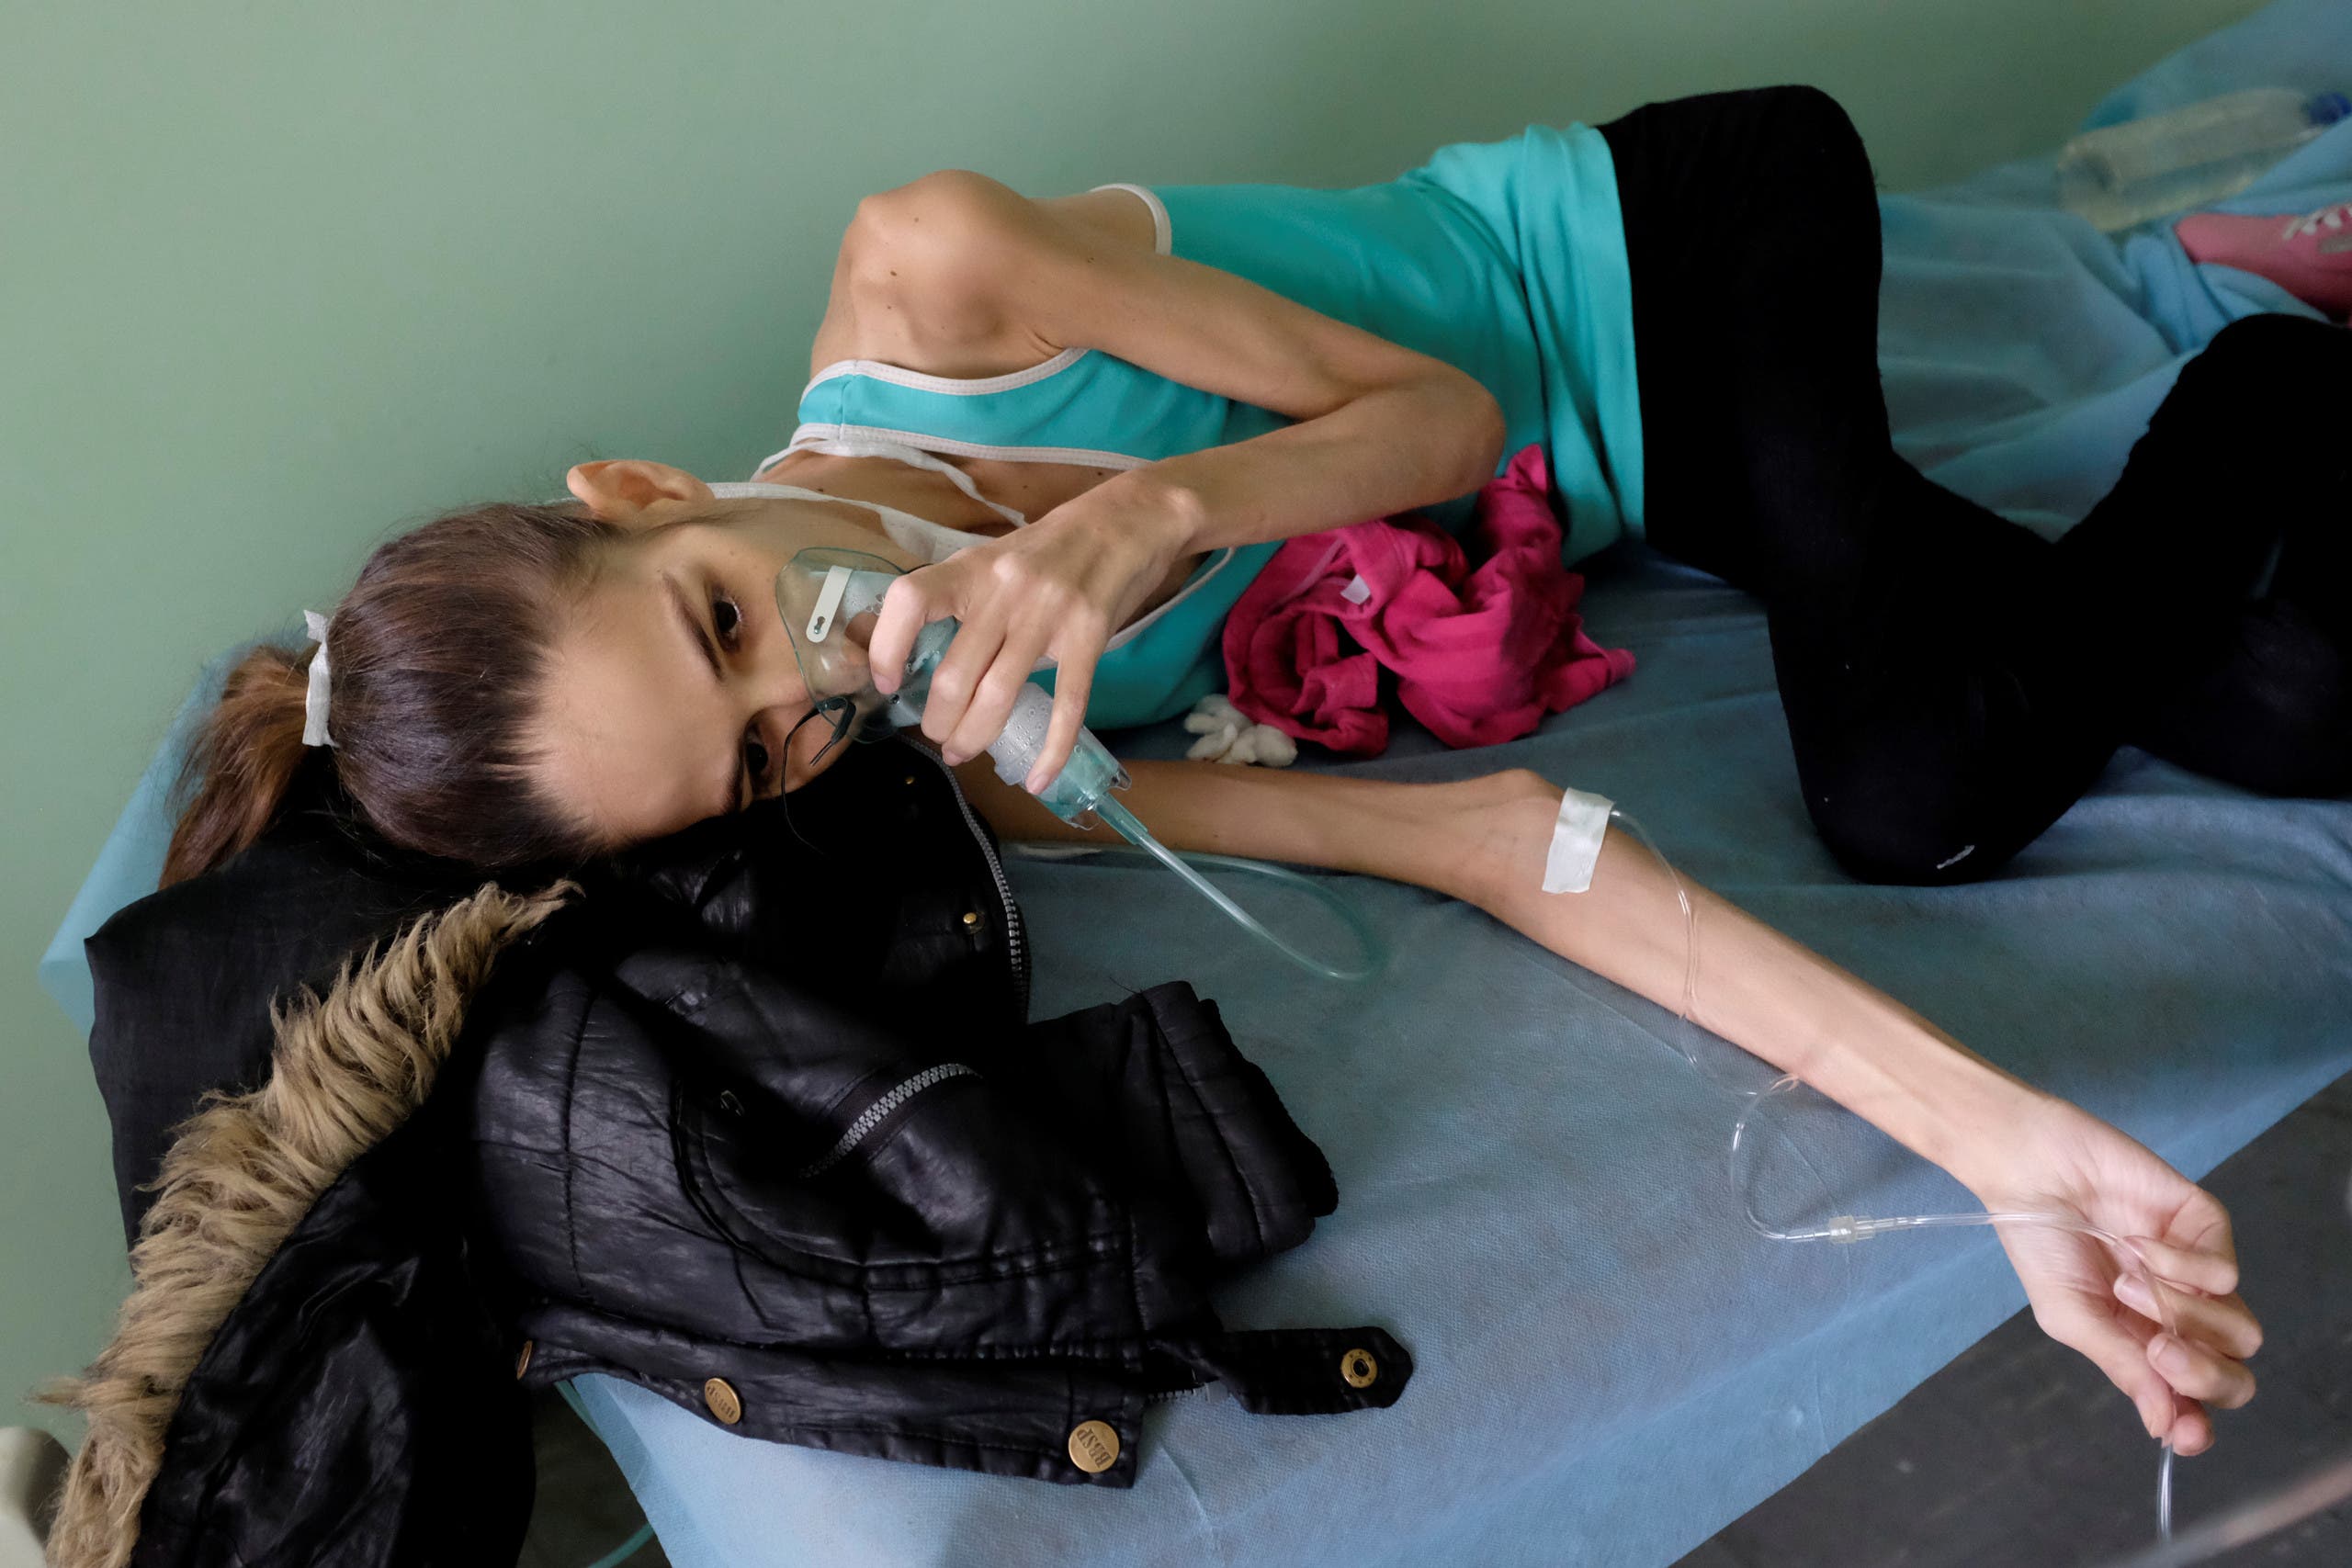 مصابة بكورونا ونقص المناعة في احد مستشفيات فنزويلا